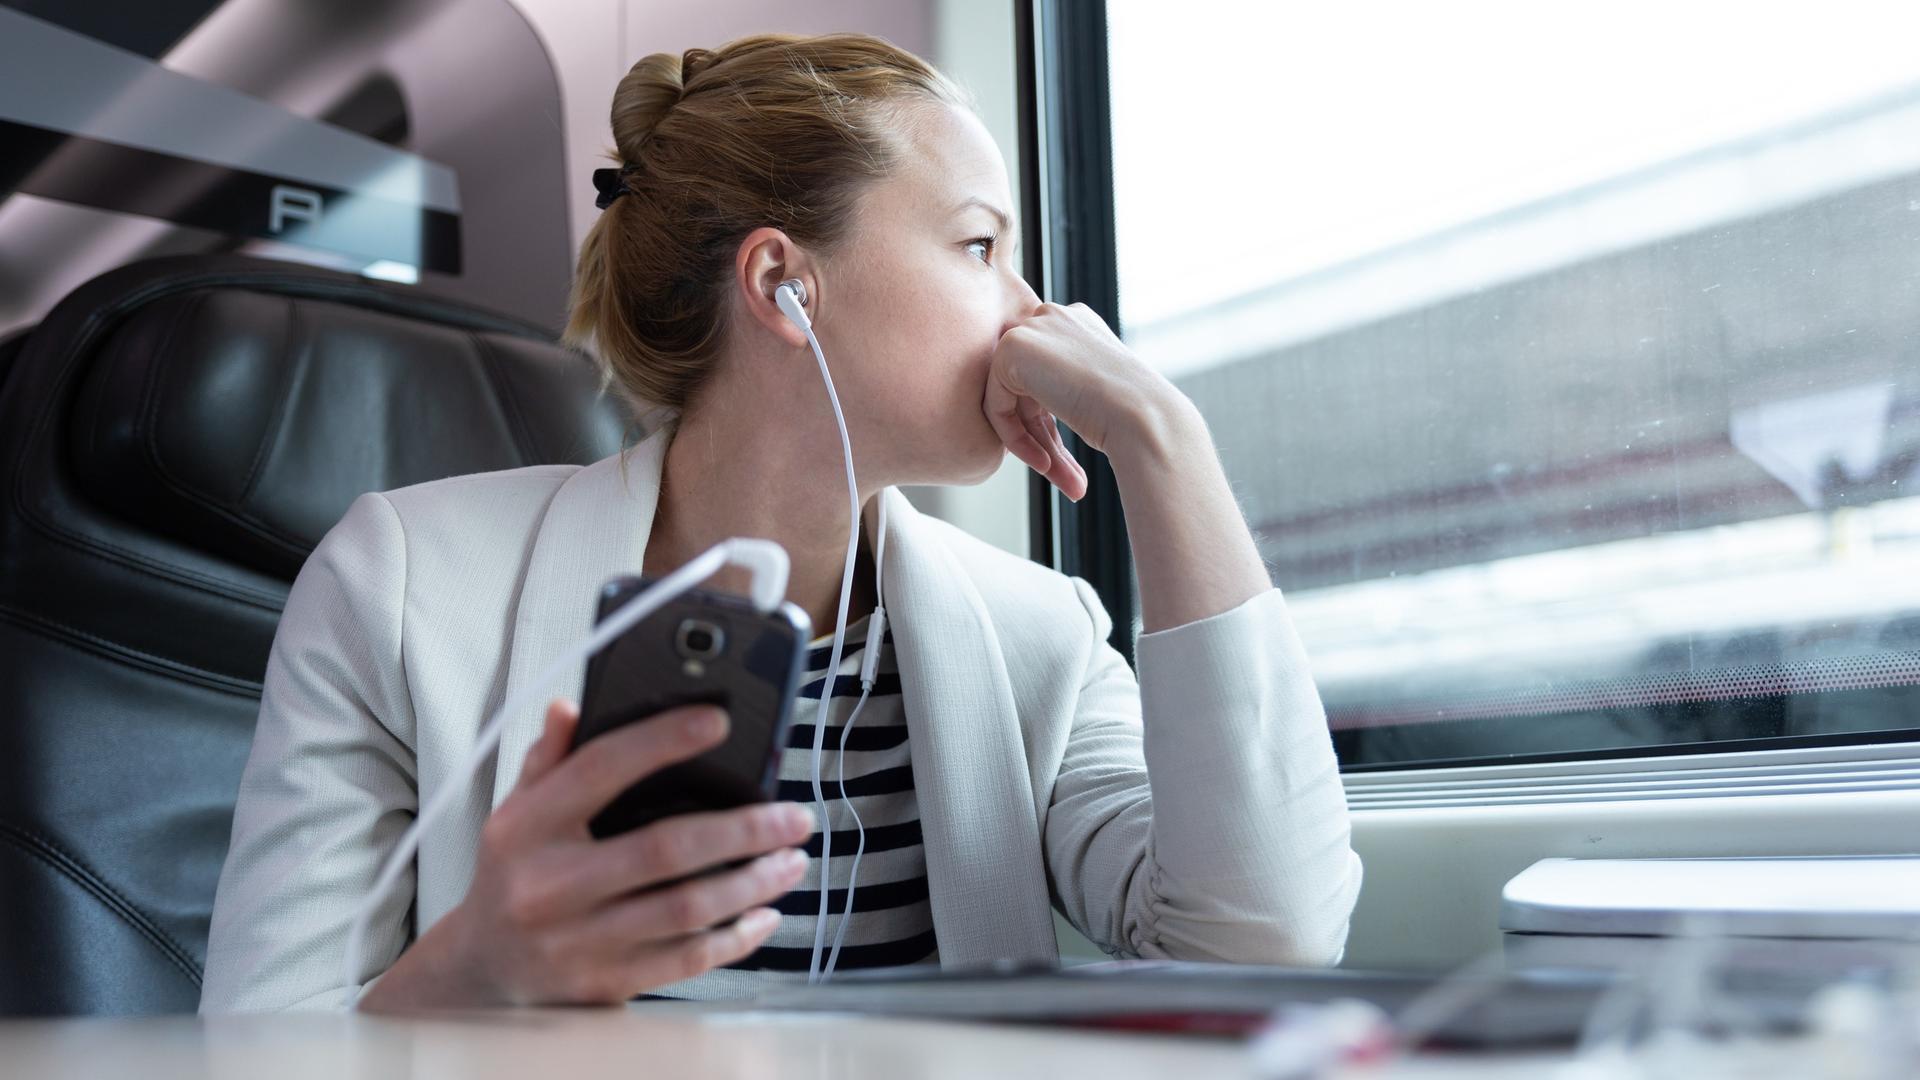 Eine Frau sitzt in der Bahn am Fenster mit Kopfhörern in den Ohren, die mit ihrem Handy verbunden sind.